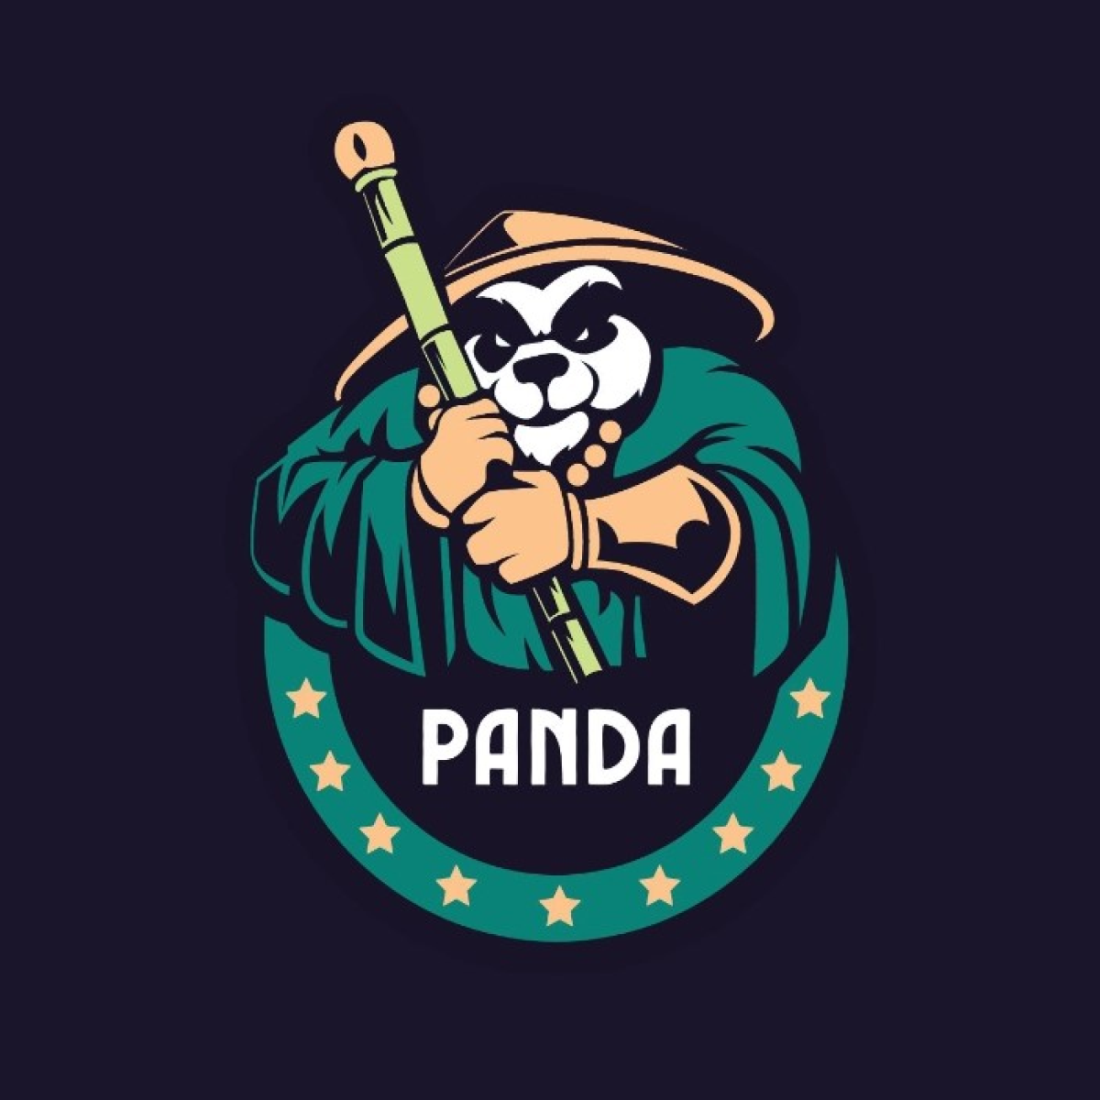 Ninja Panda logo preview image.